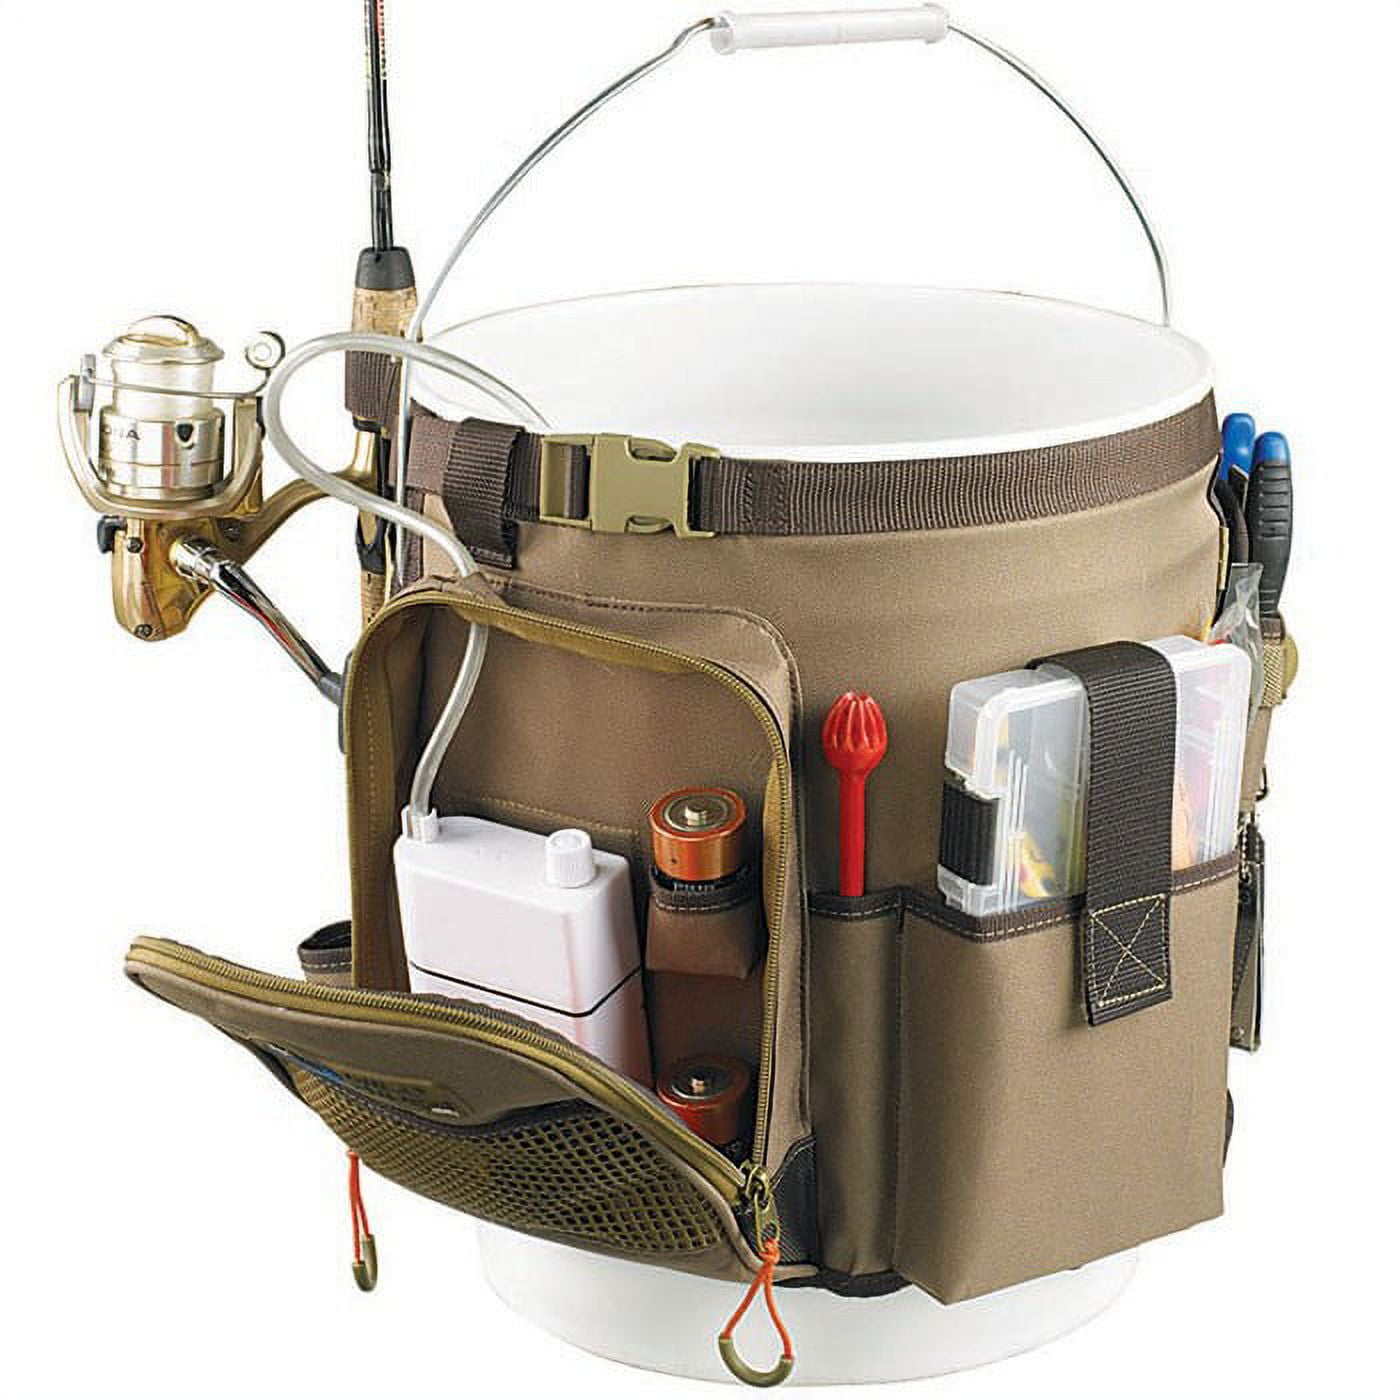 KastKing Karryall Fishing Bucket Organizer for 5 Gallon Bucket